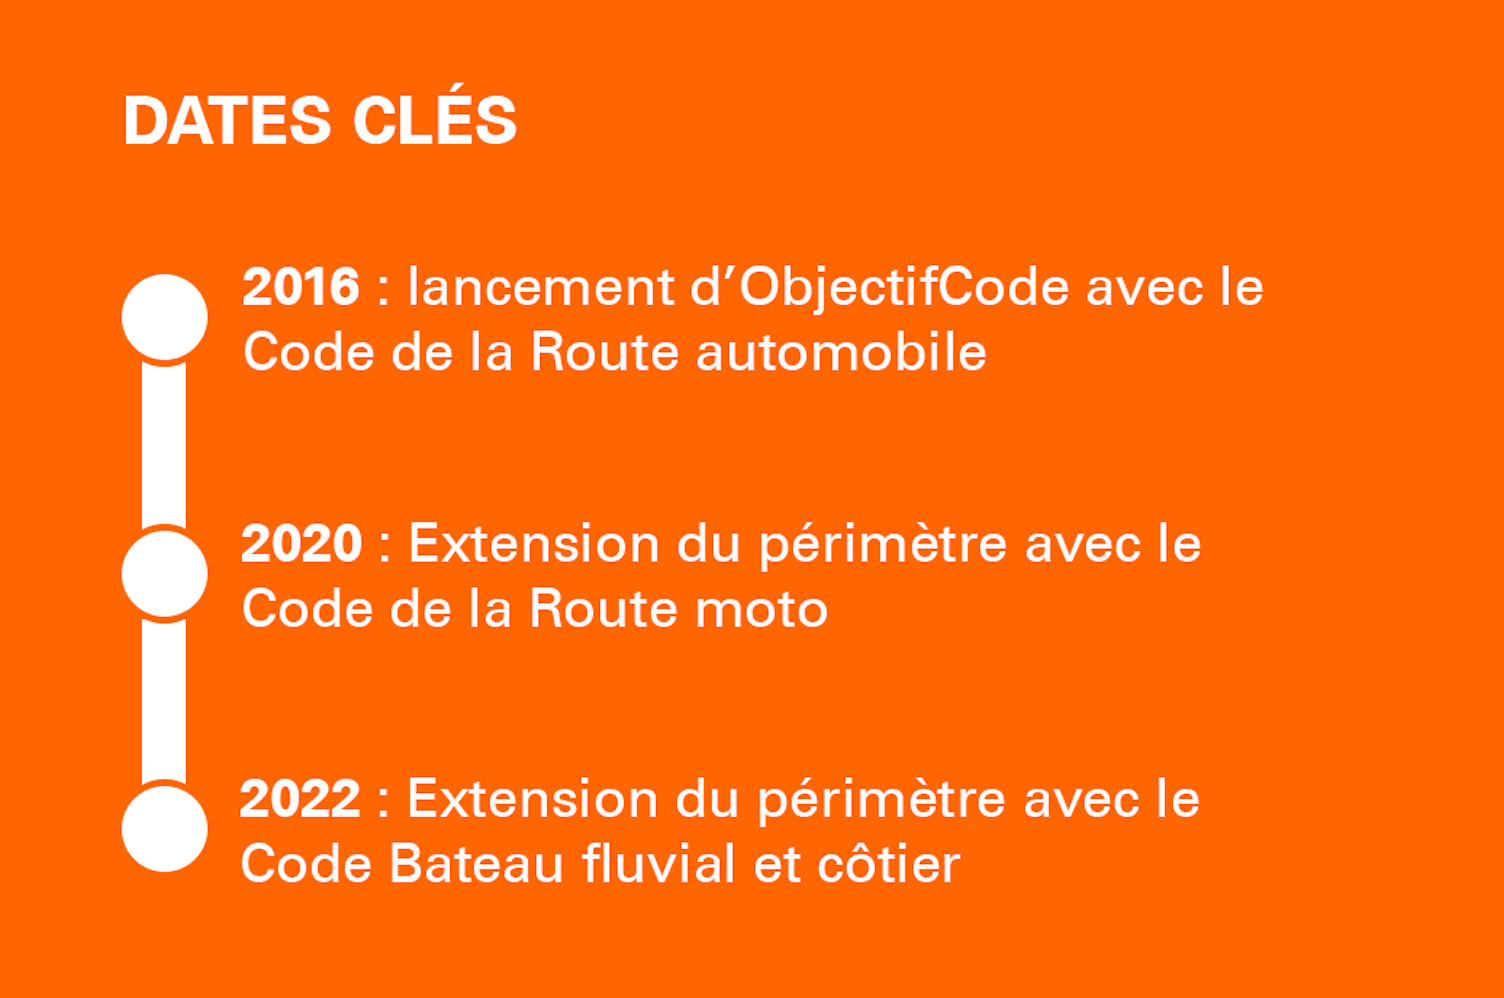 Dates clés ObjectifCode